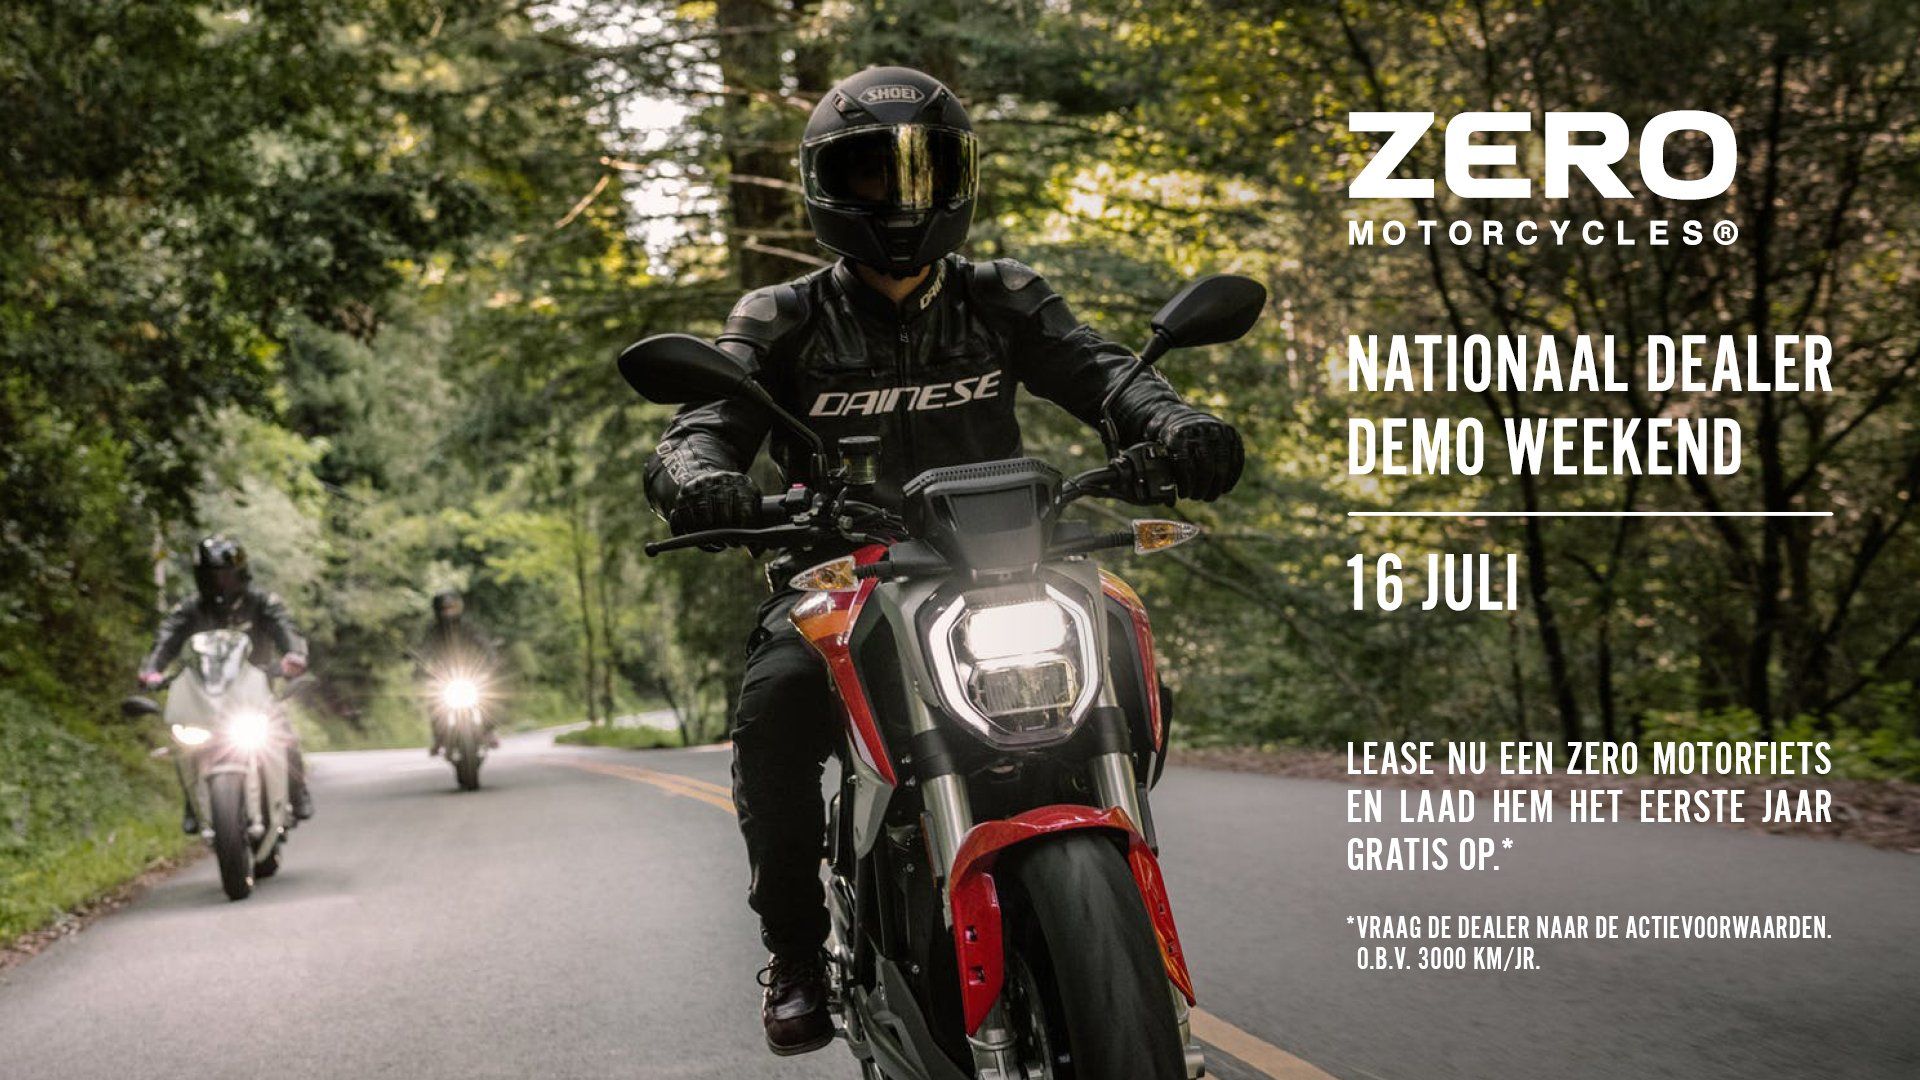 Zero Motorcycles National Dealer Demo Weekend Benelux